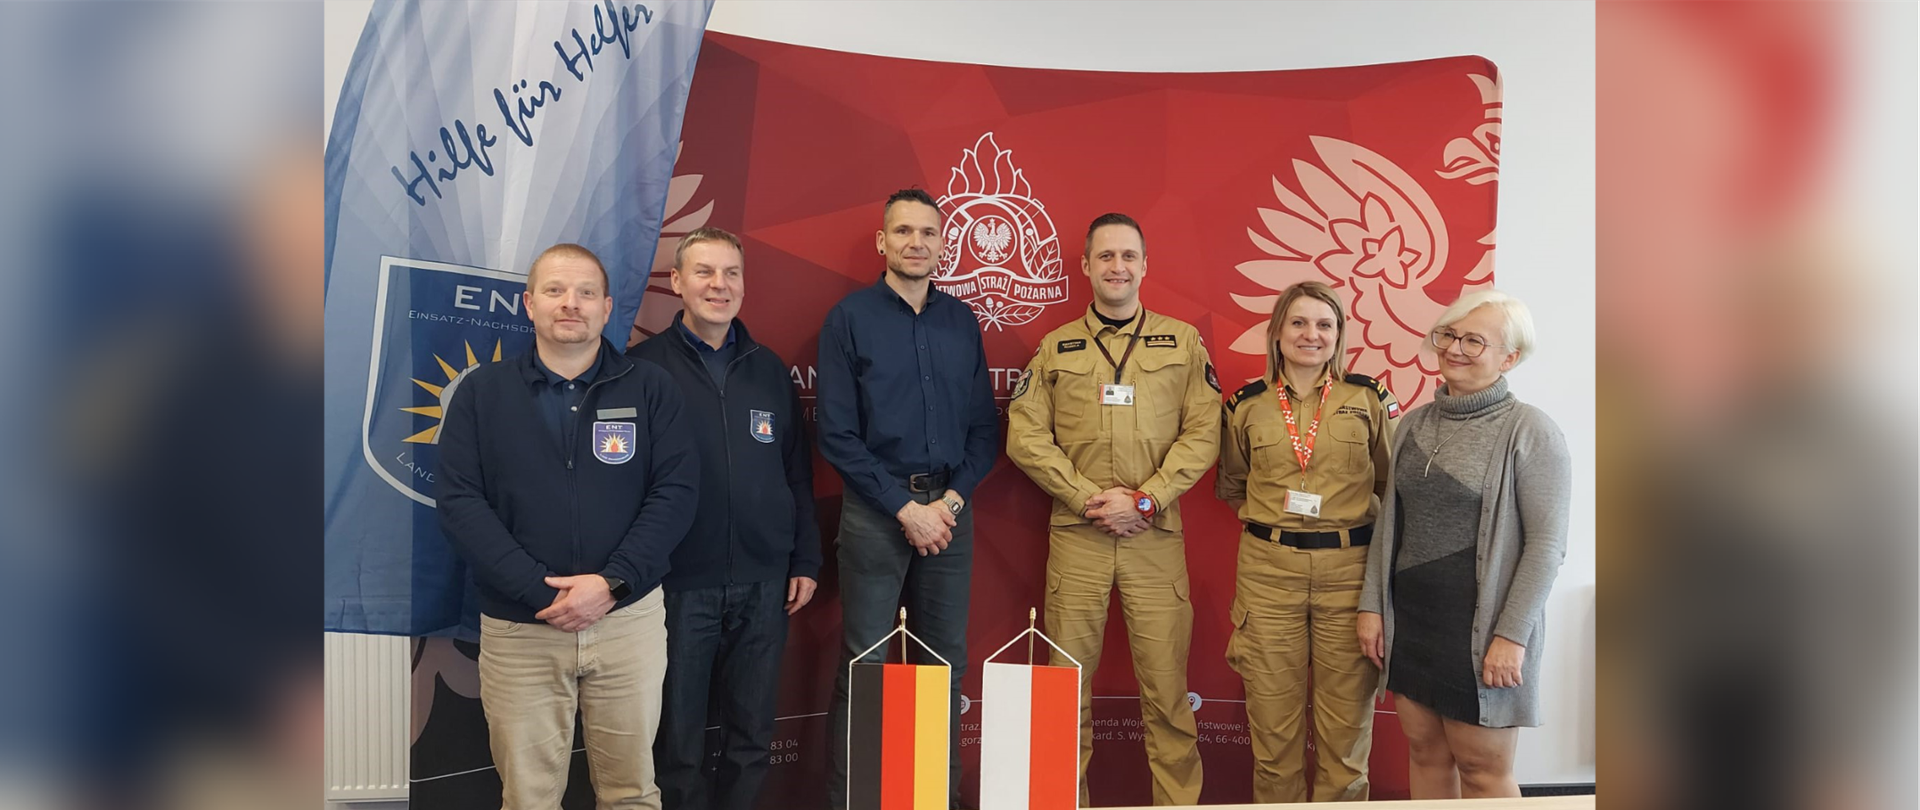 Polsko-niemiecka współpraca w zakresie wsparcia psychologicznego strażaków